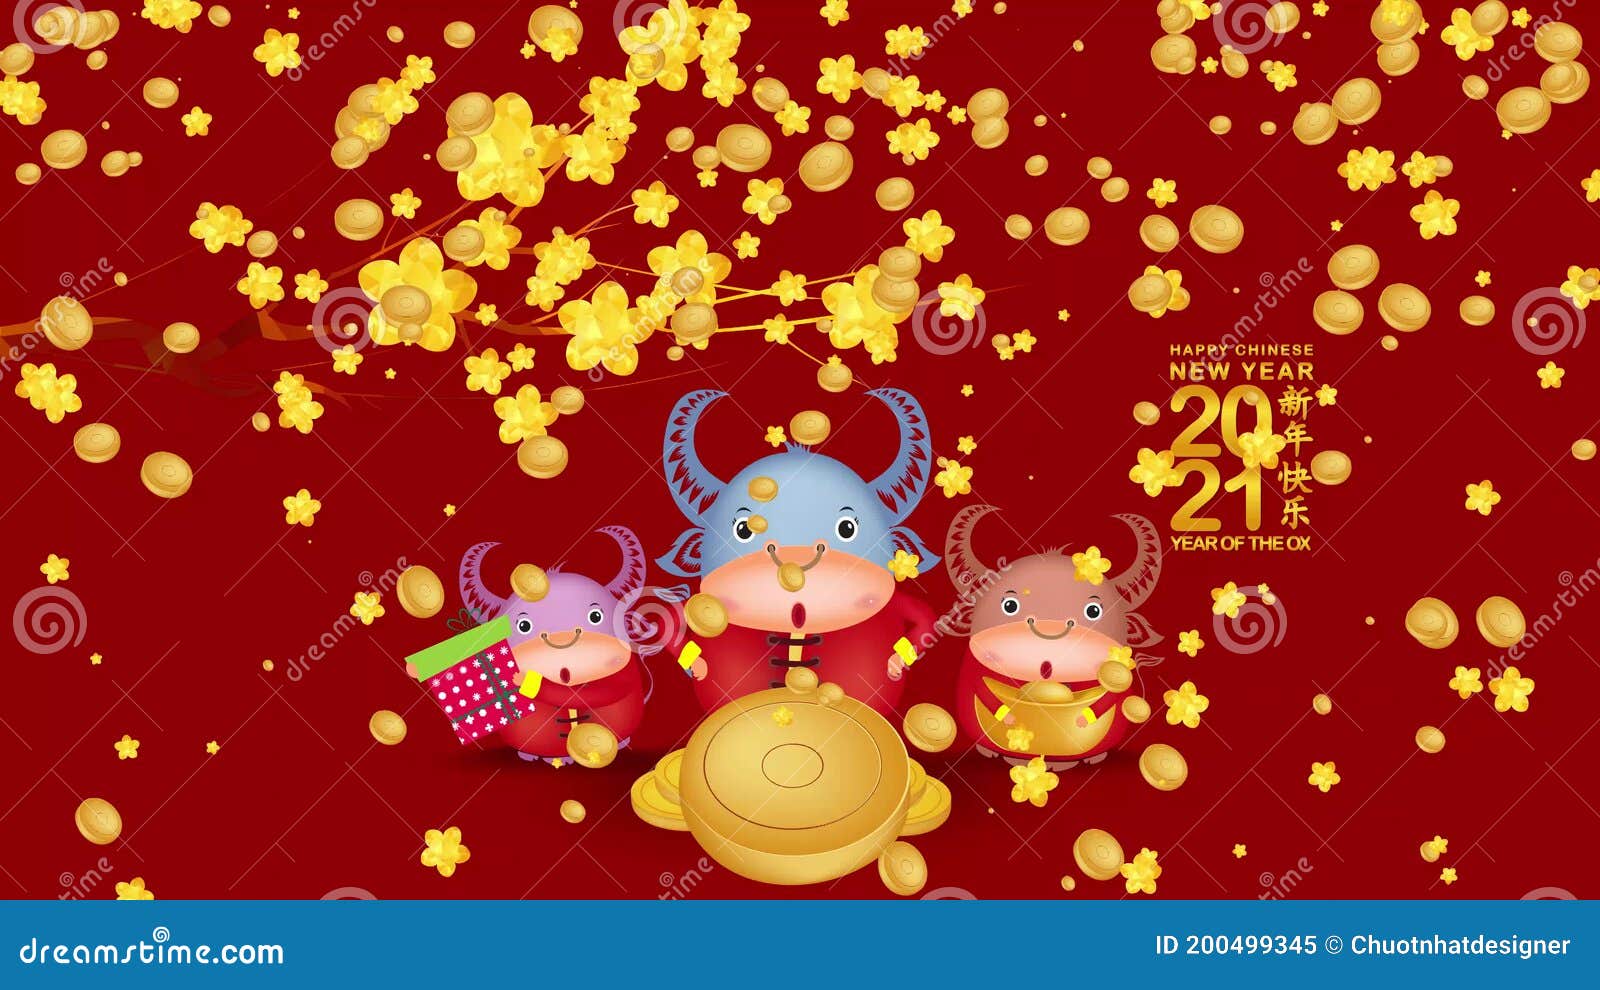 Vista superior do conceito de design de espaço de cópia de fundo de ano  novo lunar chinês com flor de ameixa branca e decoração festiva, a palavra  dentro da imagem significa bênção.